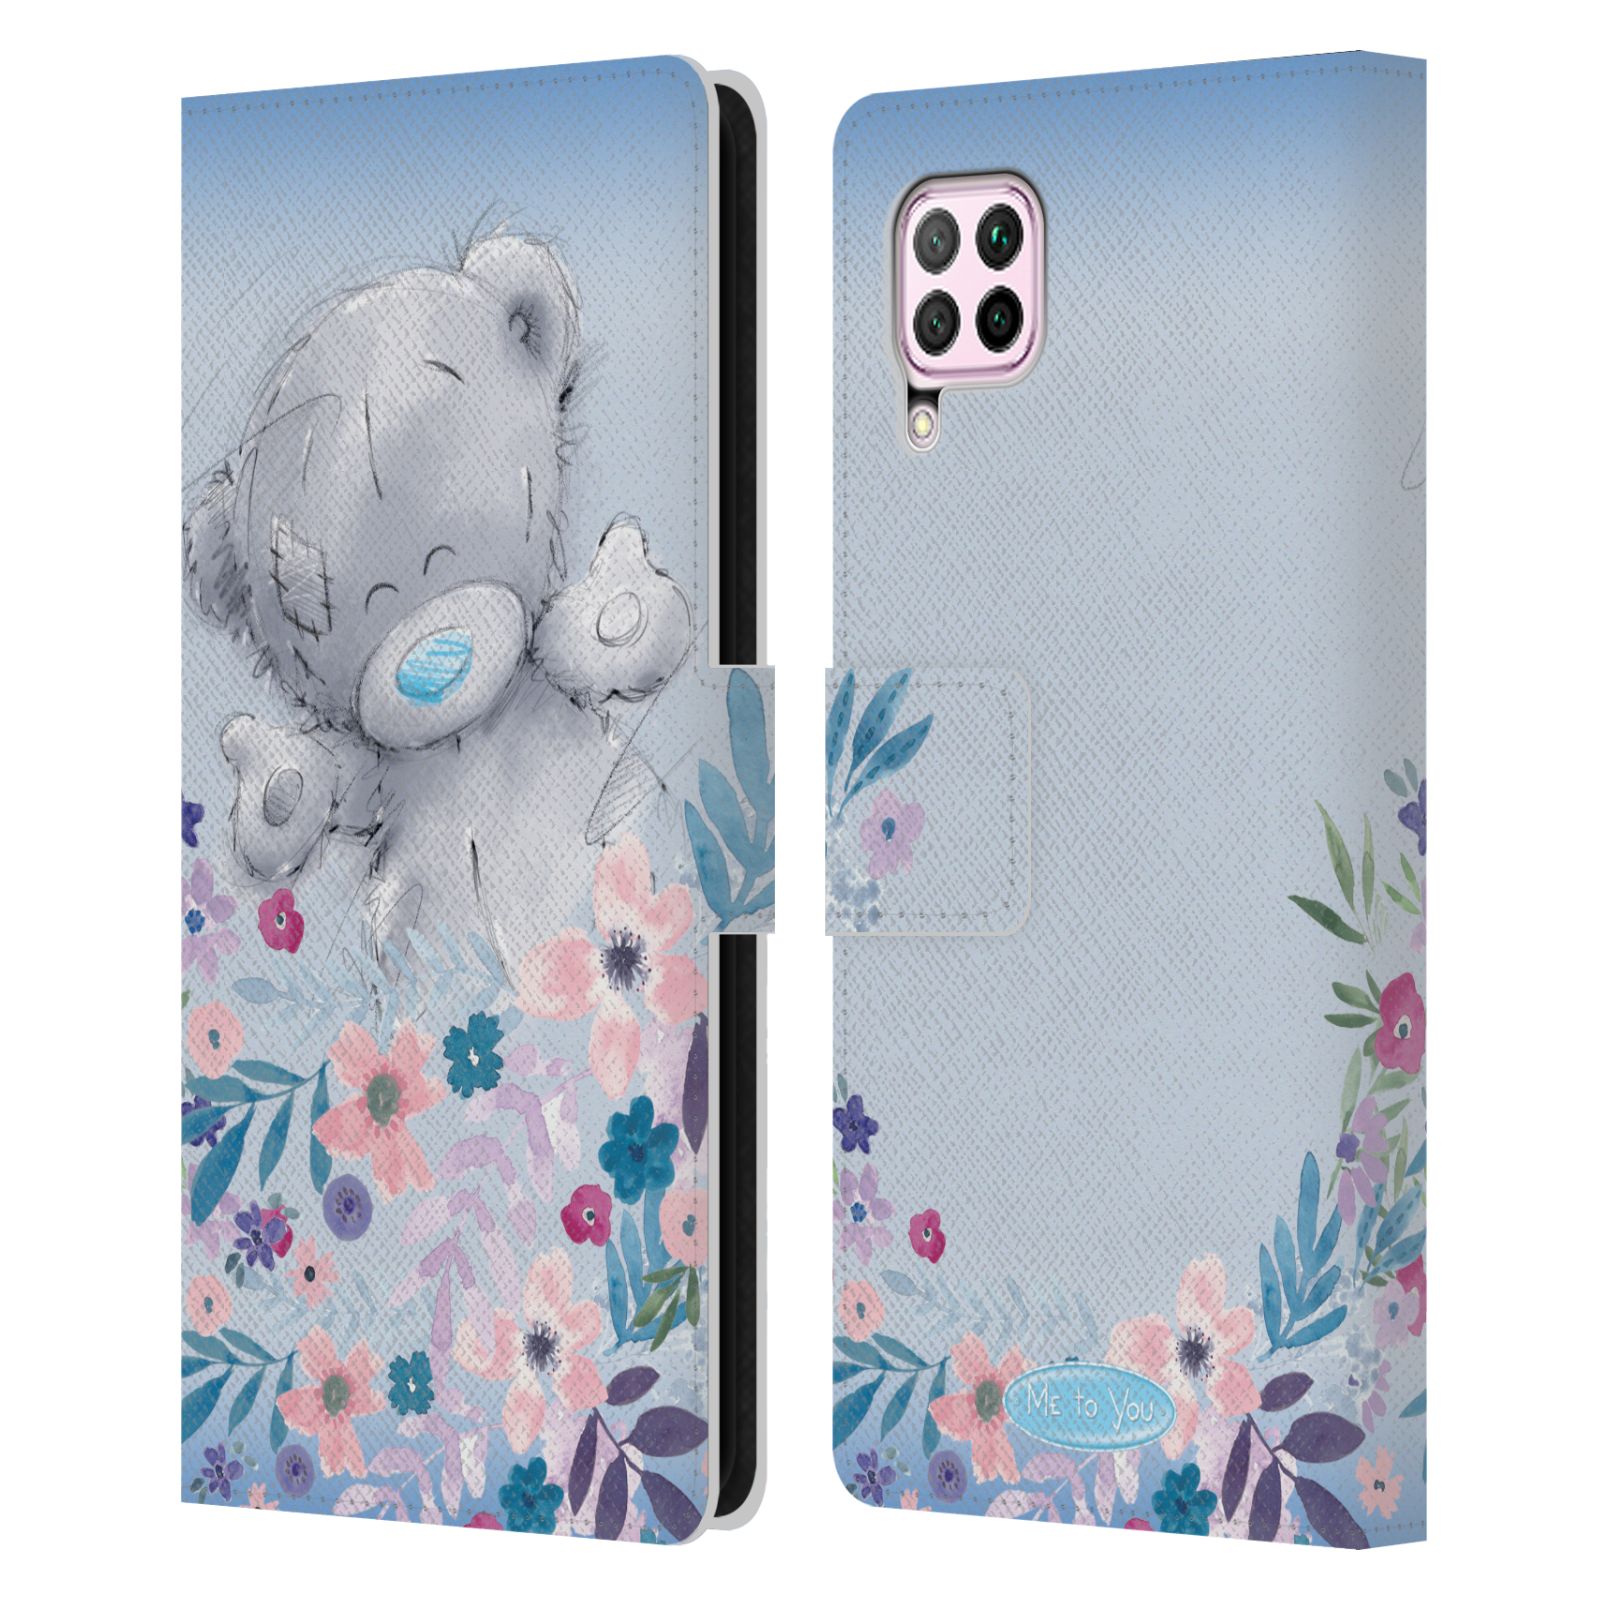 Pouzdro na mobil Huawei P40 LITE - HEAD CASE - Me To You - Medvídek mezi květinami